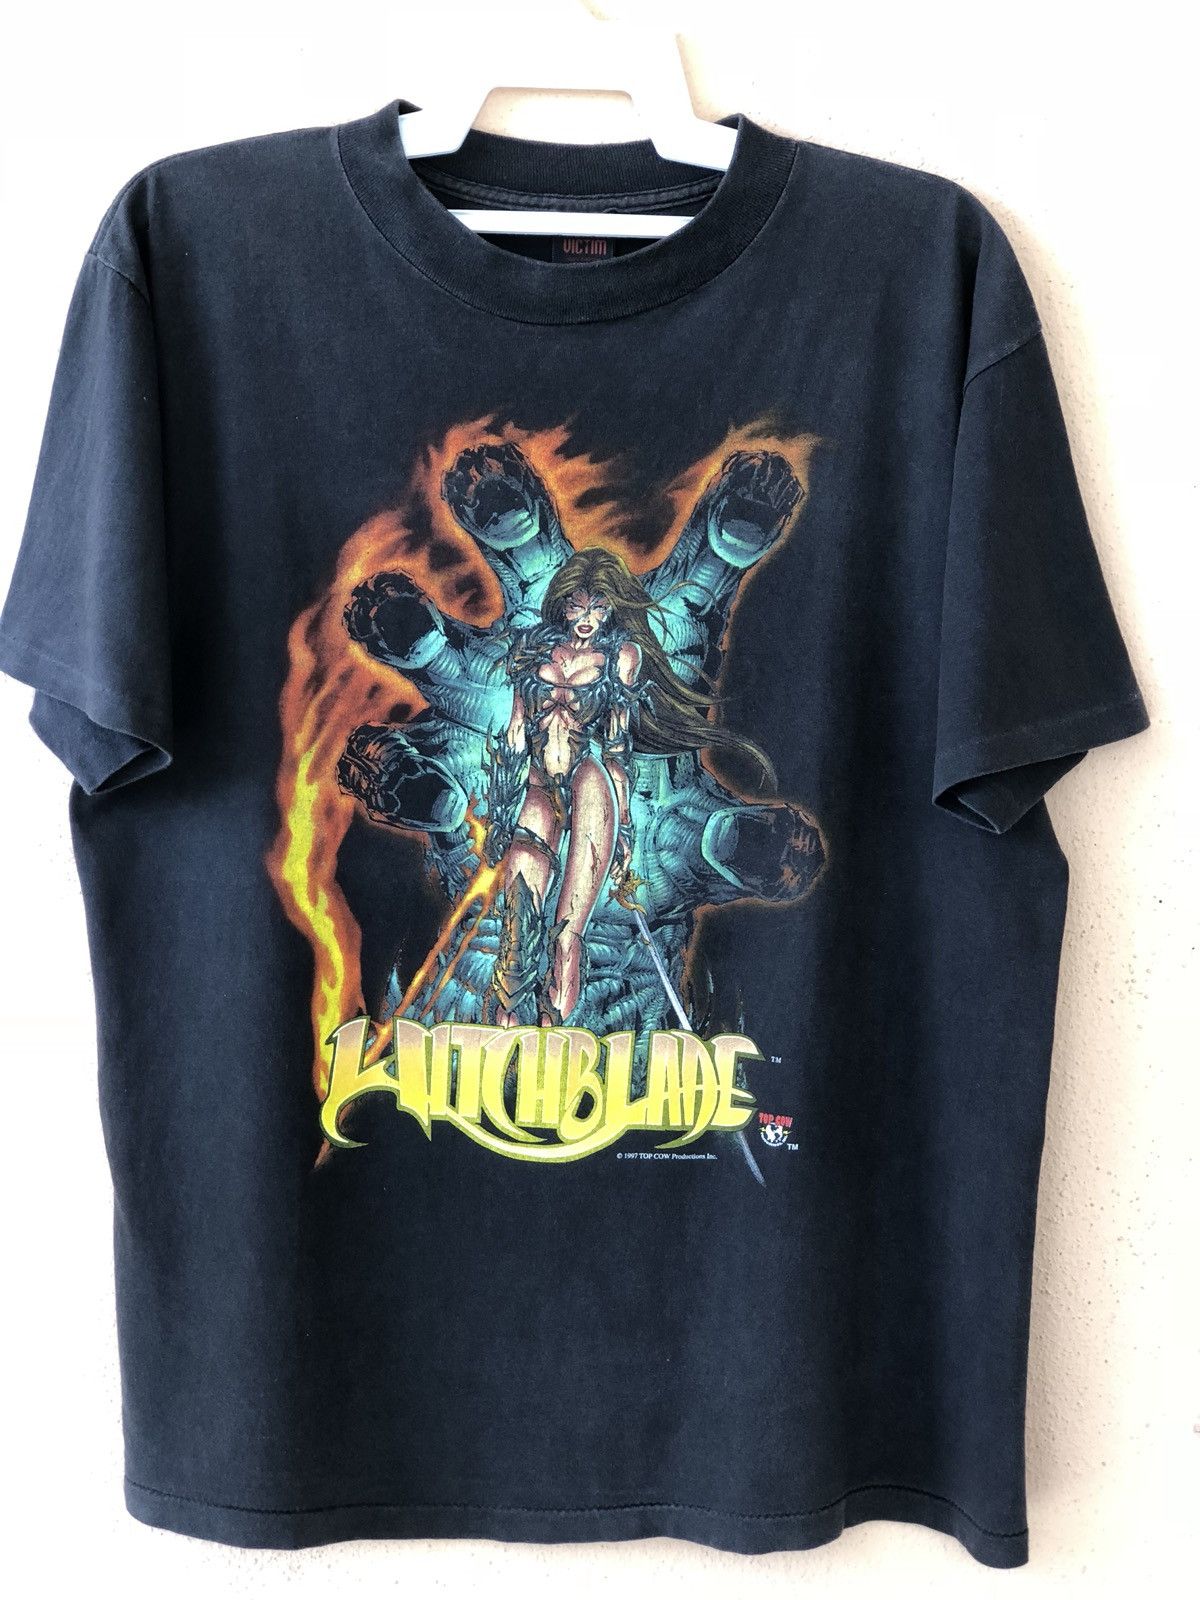 取寄用品 Witch Blade FASHION VICTIM T-shirt ©︎1997 - トップス